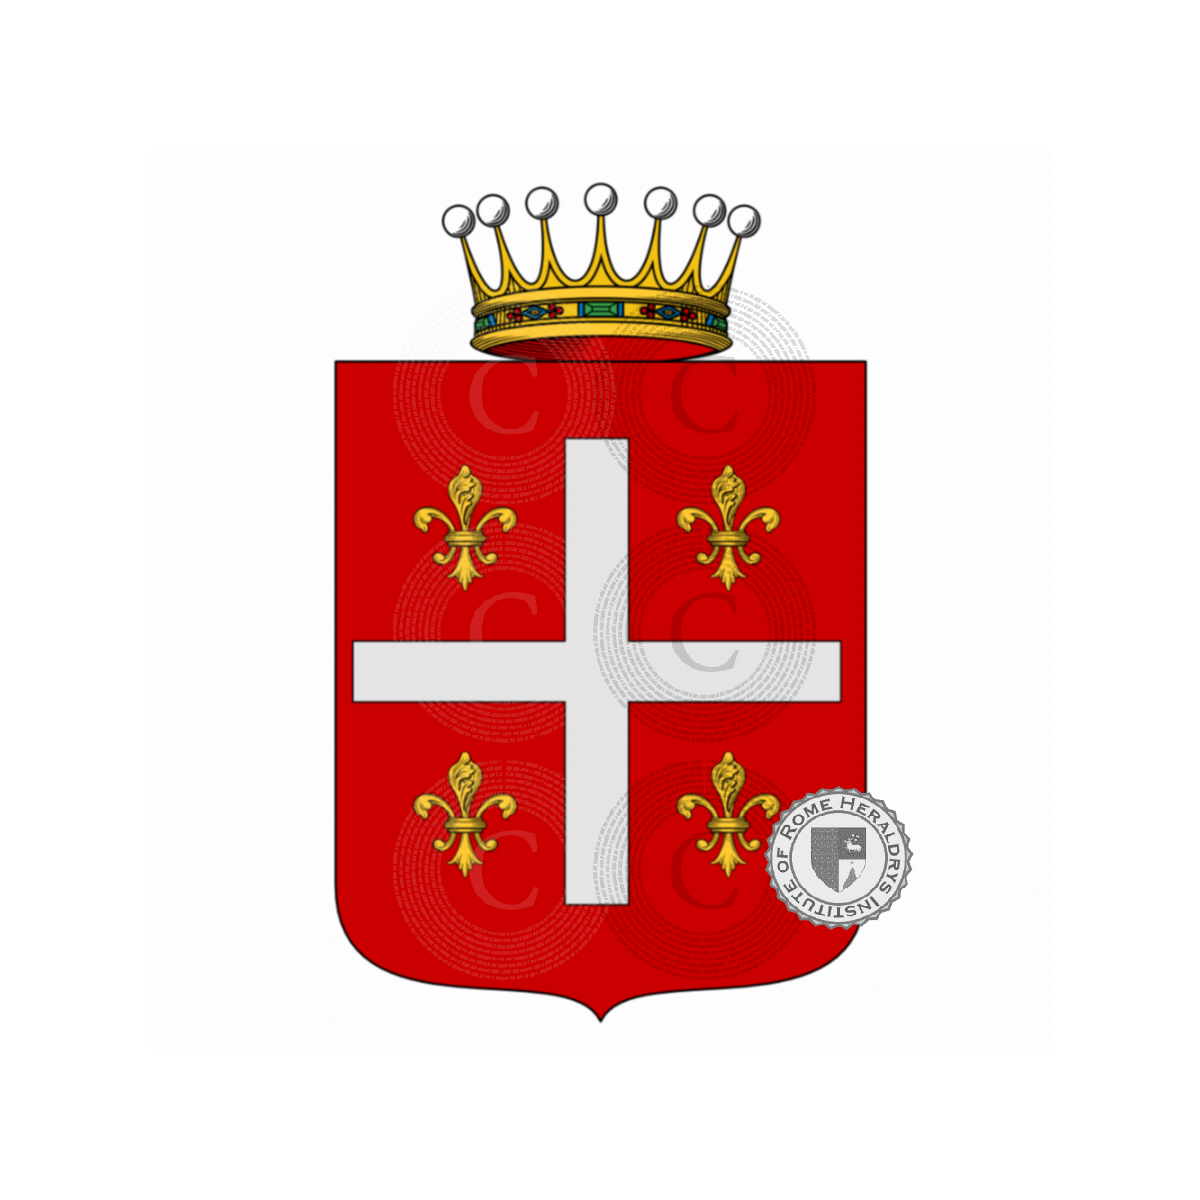 Escudo de la familiaPaladini, Paladino,Palladini